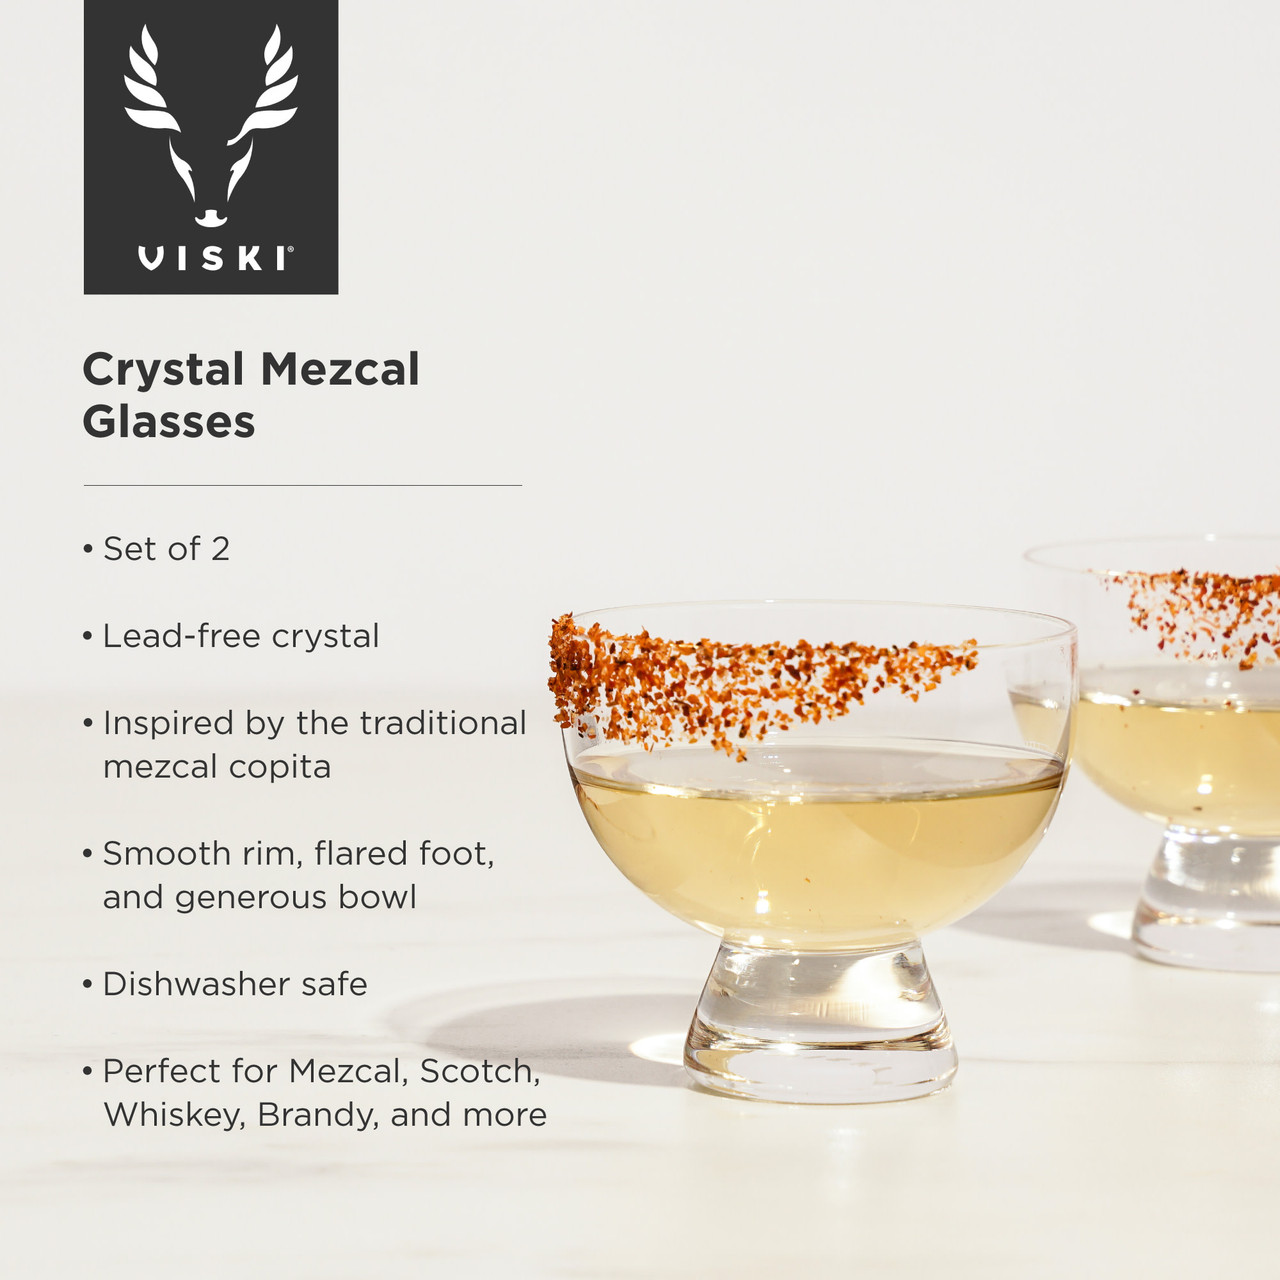 Crystal Mezcal Glasses by Viski®